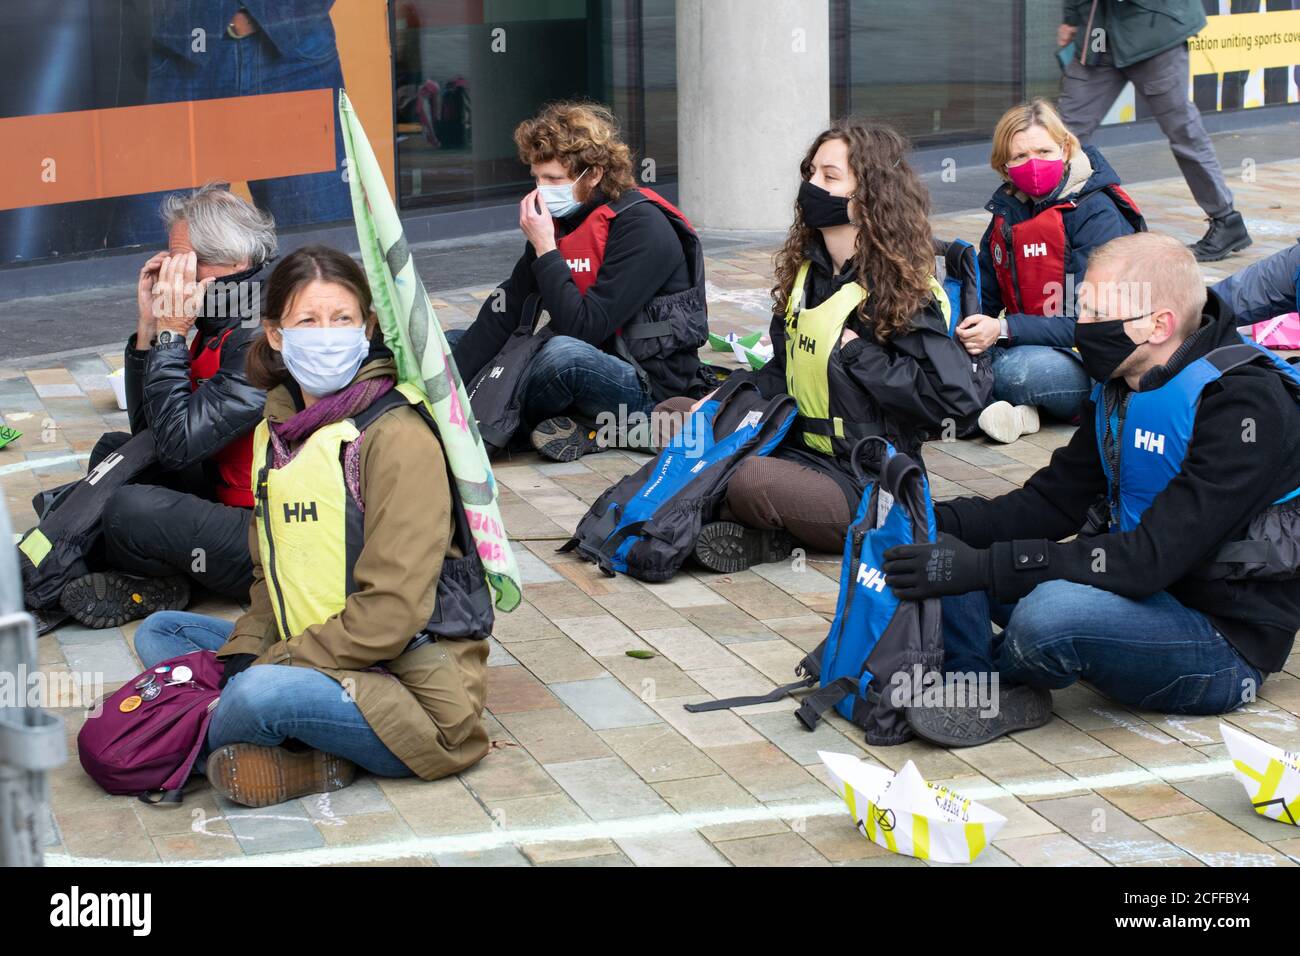 La ribellione dell'estinzione libera la verità protesta a Media City, Manchester UK. Manifestanti in un profilo gesso di una barca che rappresenta i rifugiati climatici. Foto Stock